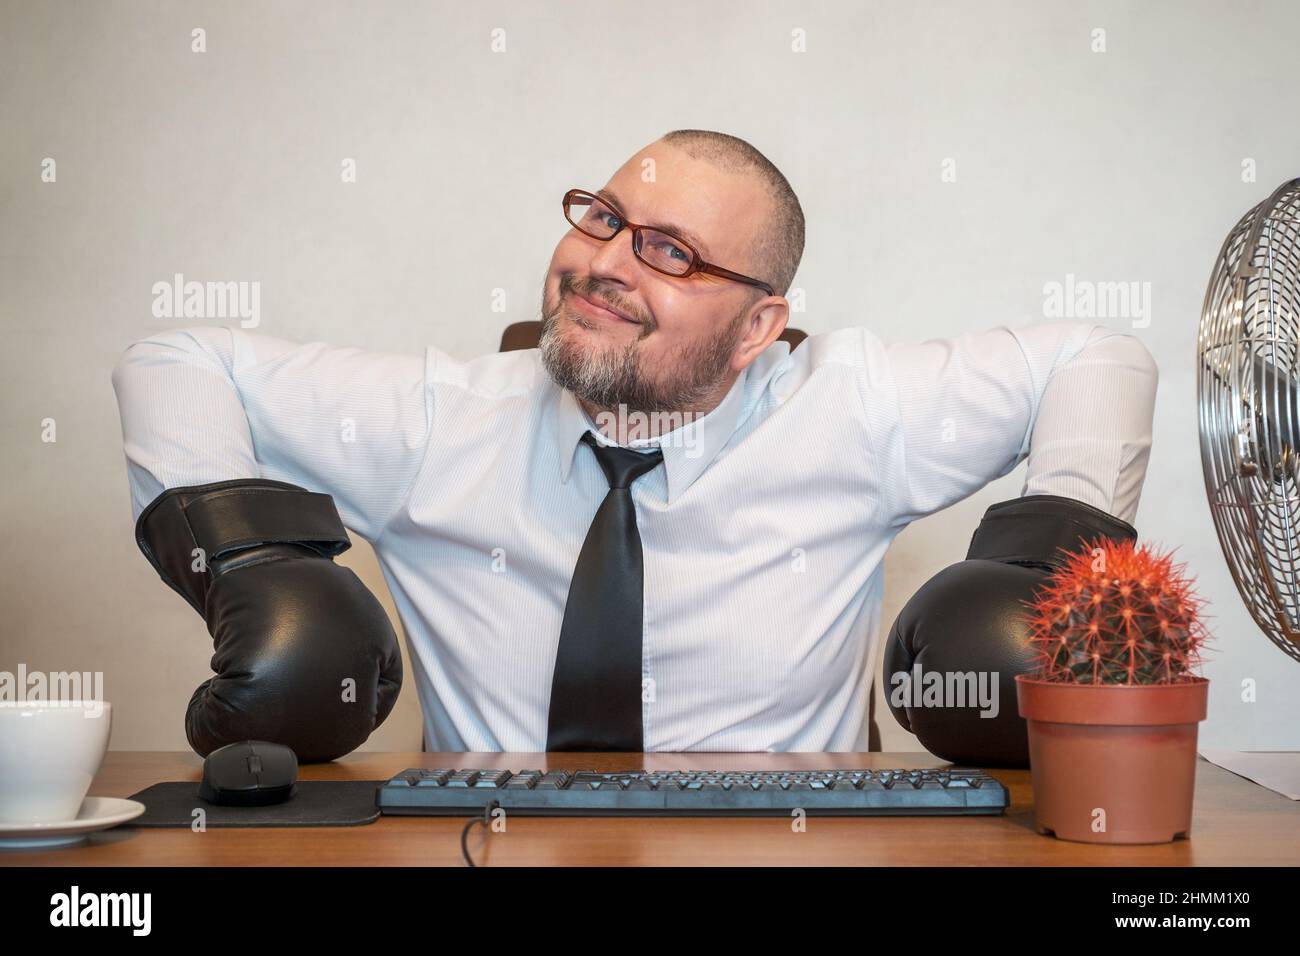 Der Mann stellt komisch die Arbeit eines Geschäftsmannes dar. Er sitzt mit Boxhandschuhen an einem Tisch. Stockfoto